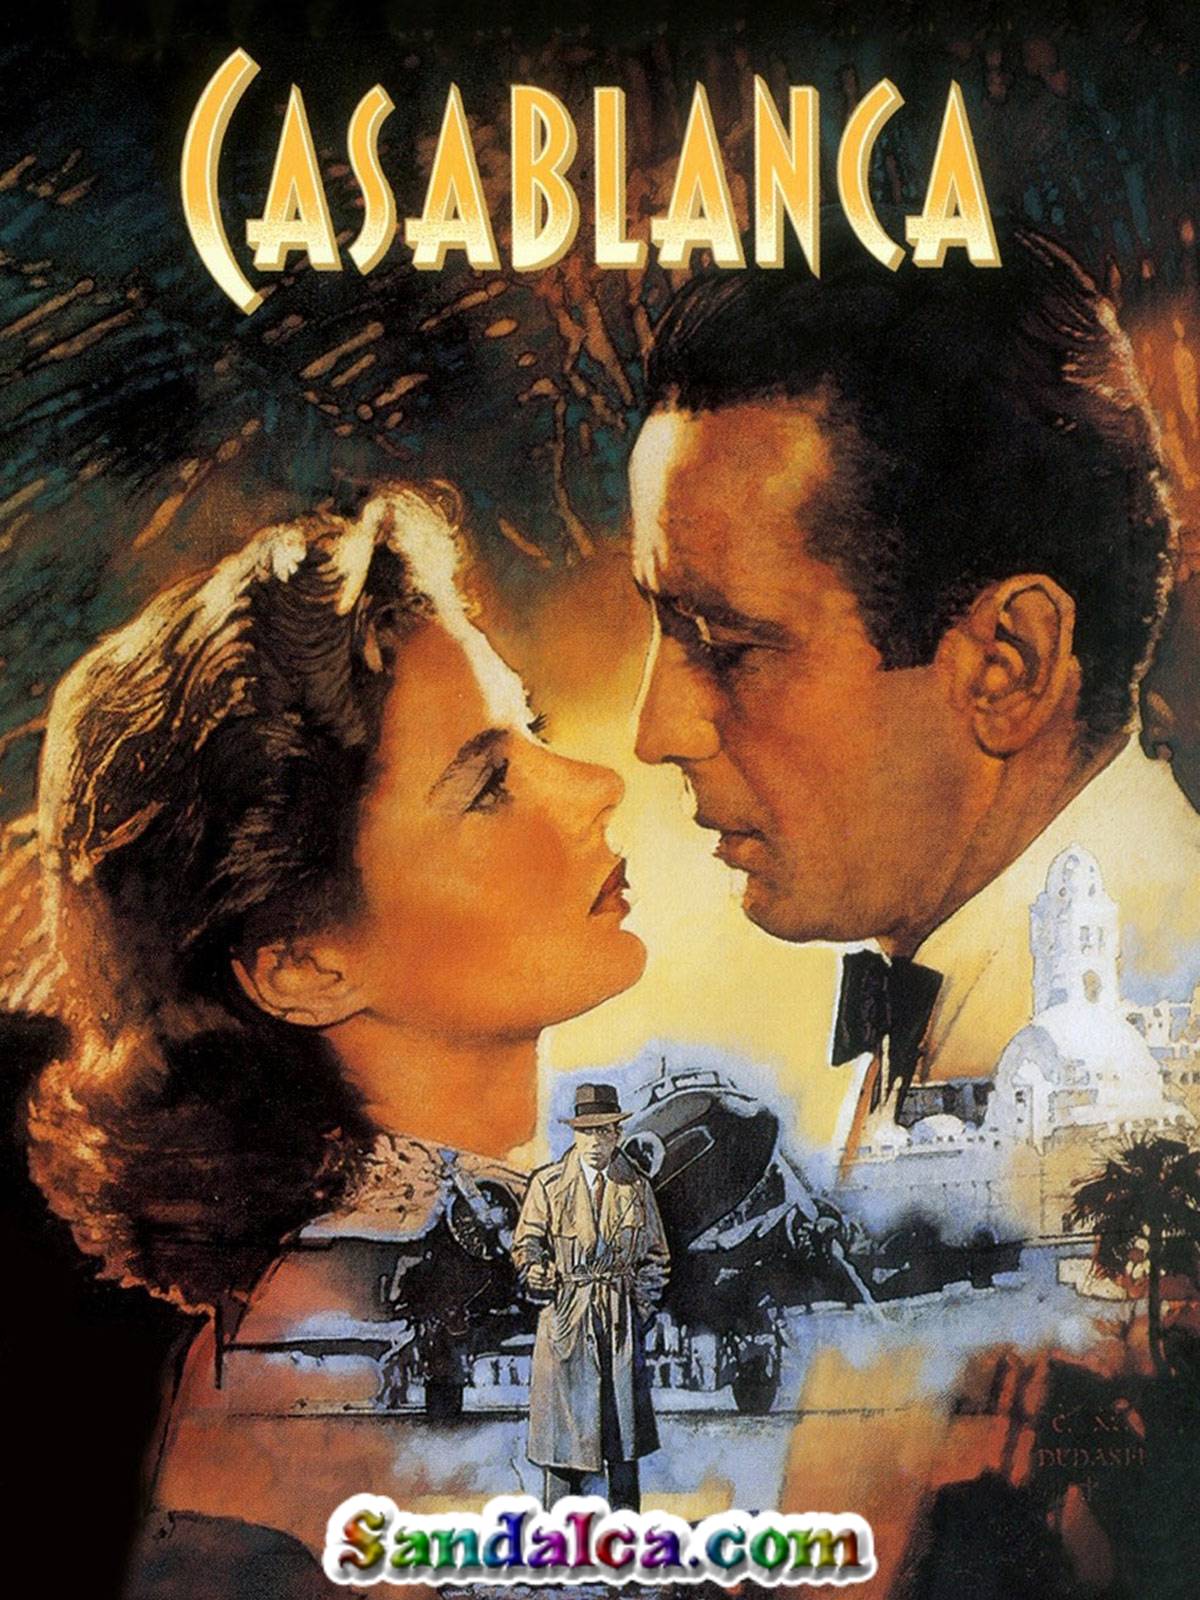 Kazablanka - Casablanca Türkçe Dublaj indir | BRRip DUAL | 1942